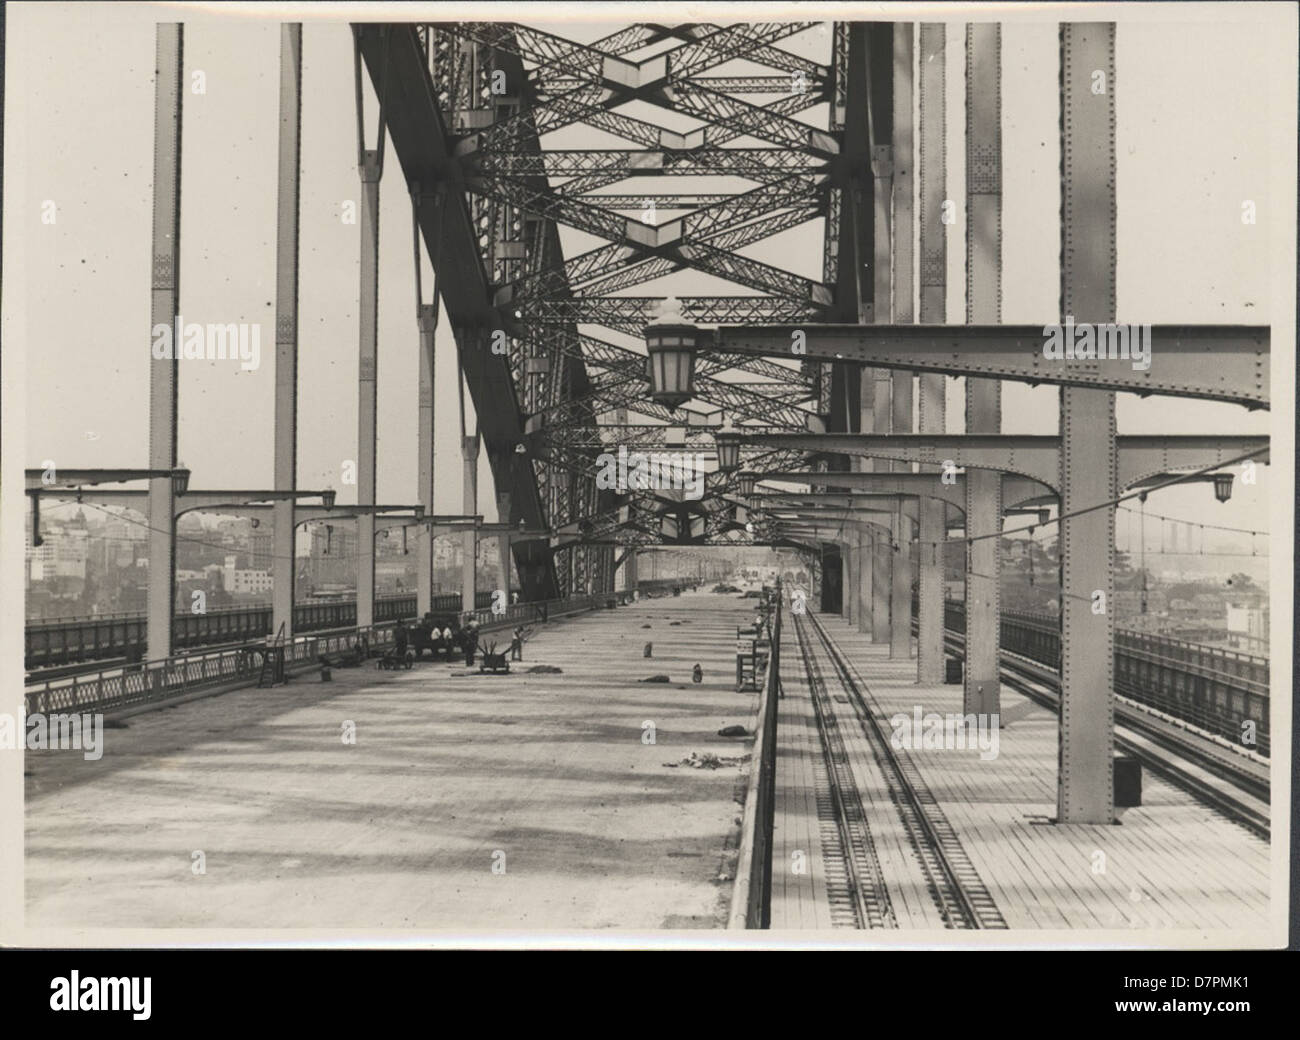 87/1353-133tirage photographique, vue du pont nouvellement achevée de Harbour Bridge, de l'argent / gélatine / papier, photographie de la Nouvelle Galles du sud Ministère des Travaux publics, Sydney, Australie, Janvier, 1932 Banque D'Images